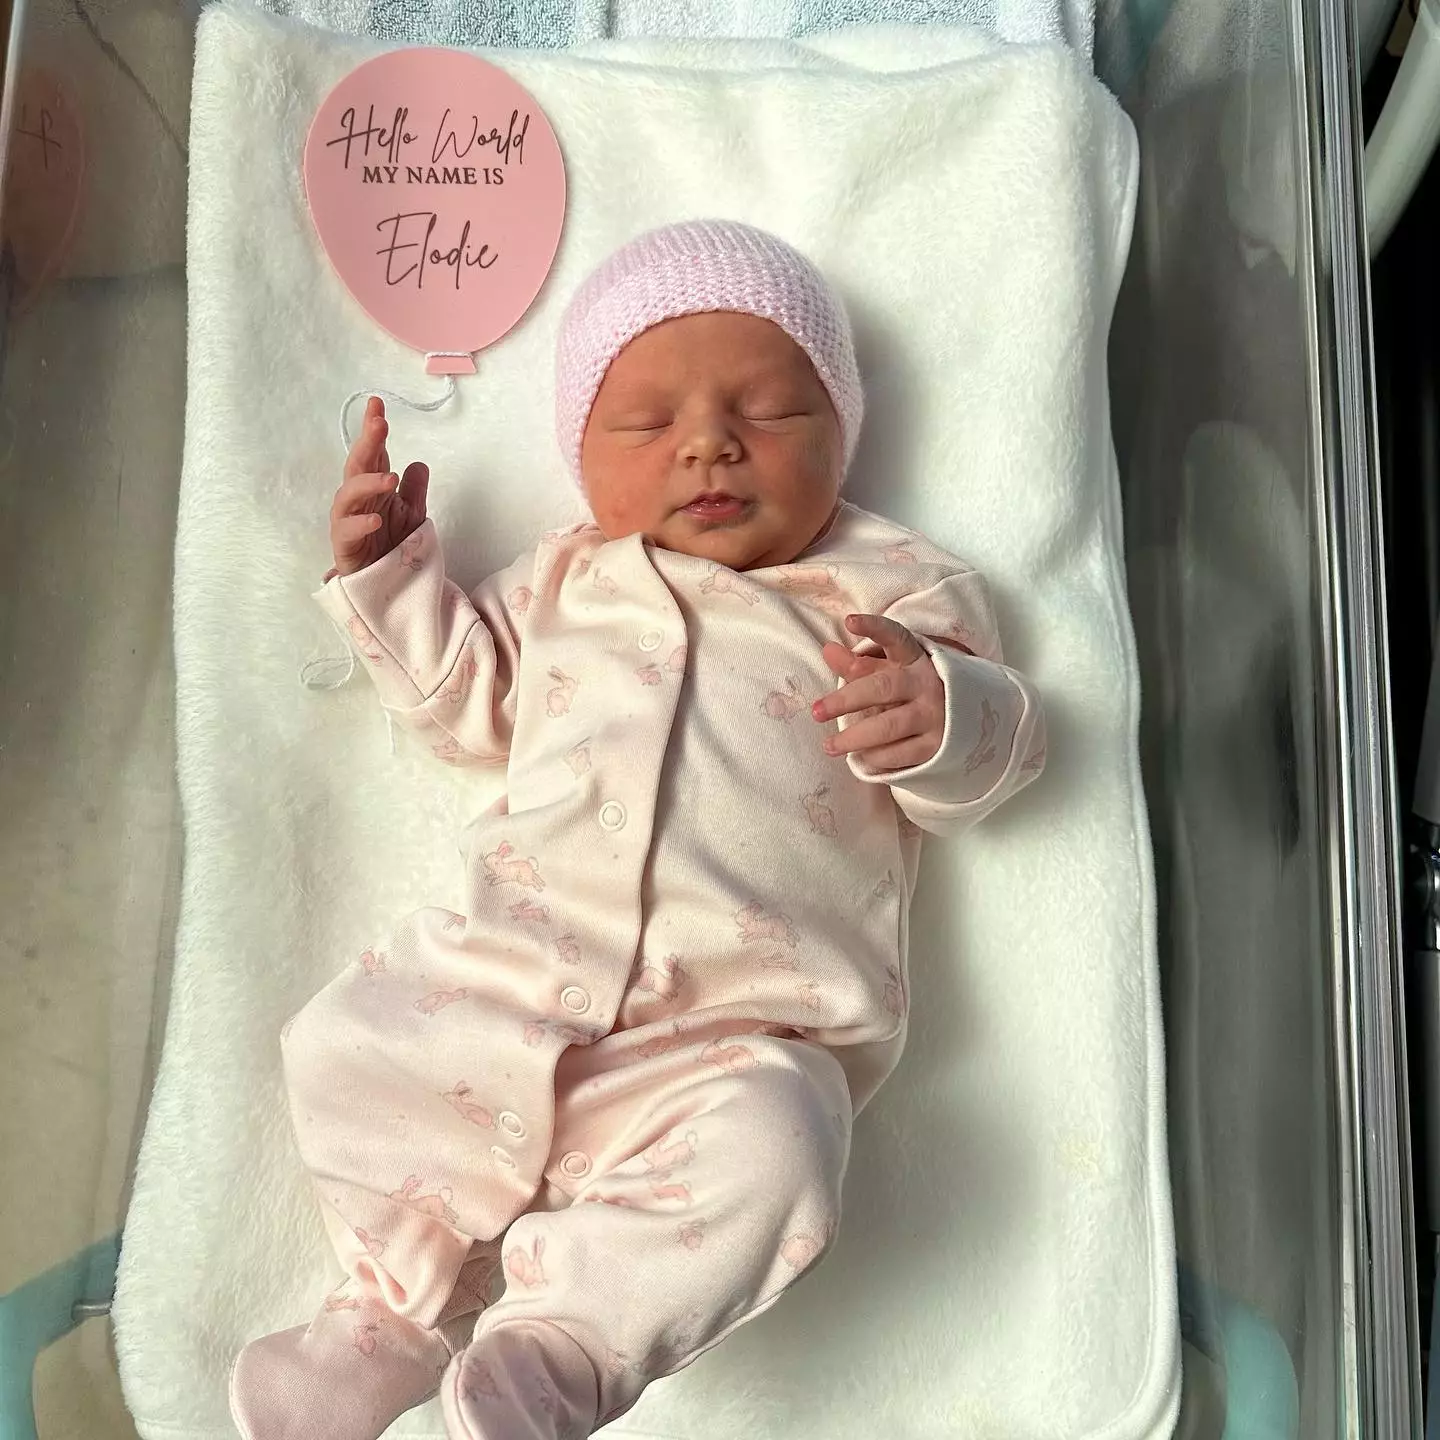 Millie Radford welcomed a little girl named Elodie-Jade last week.